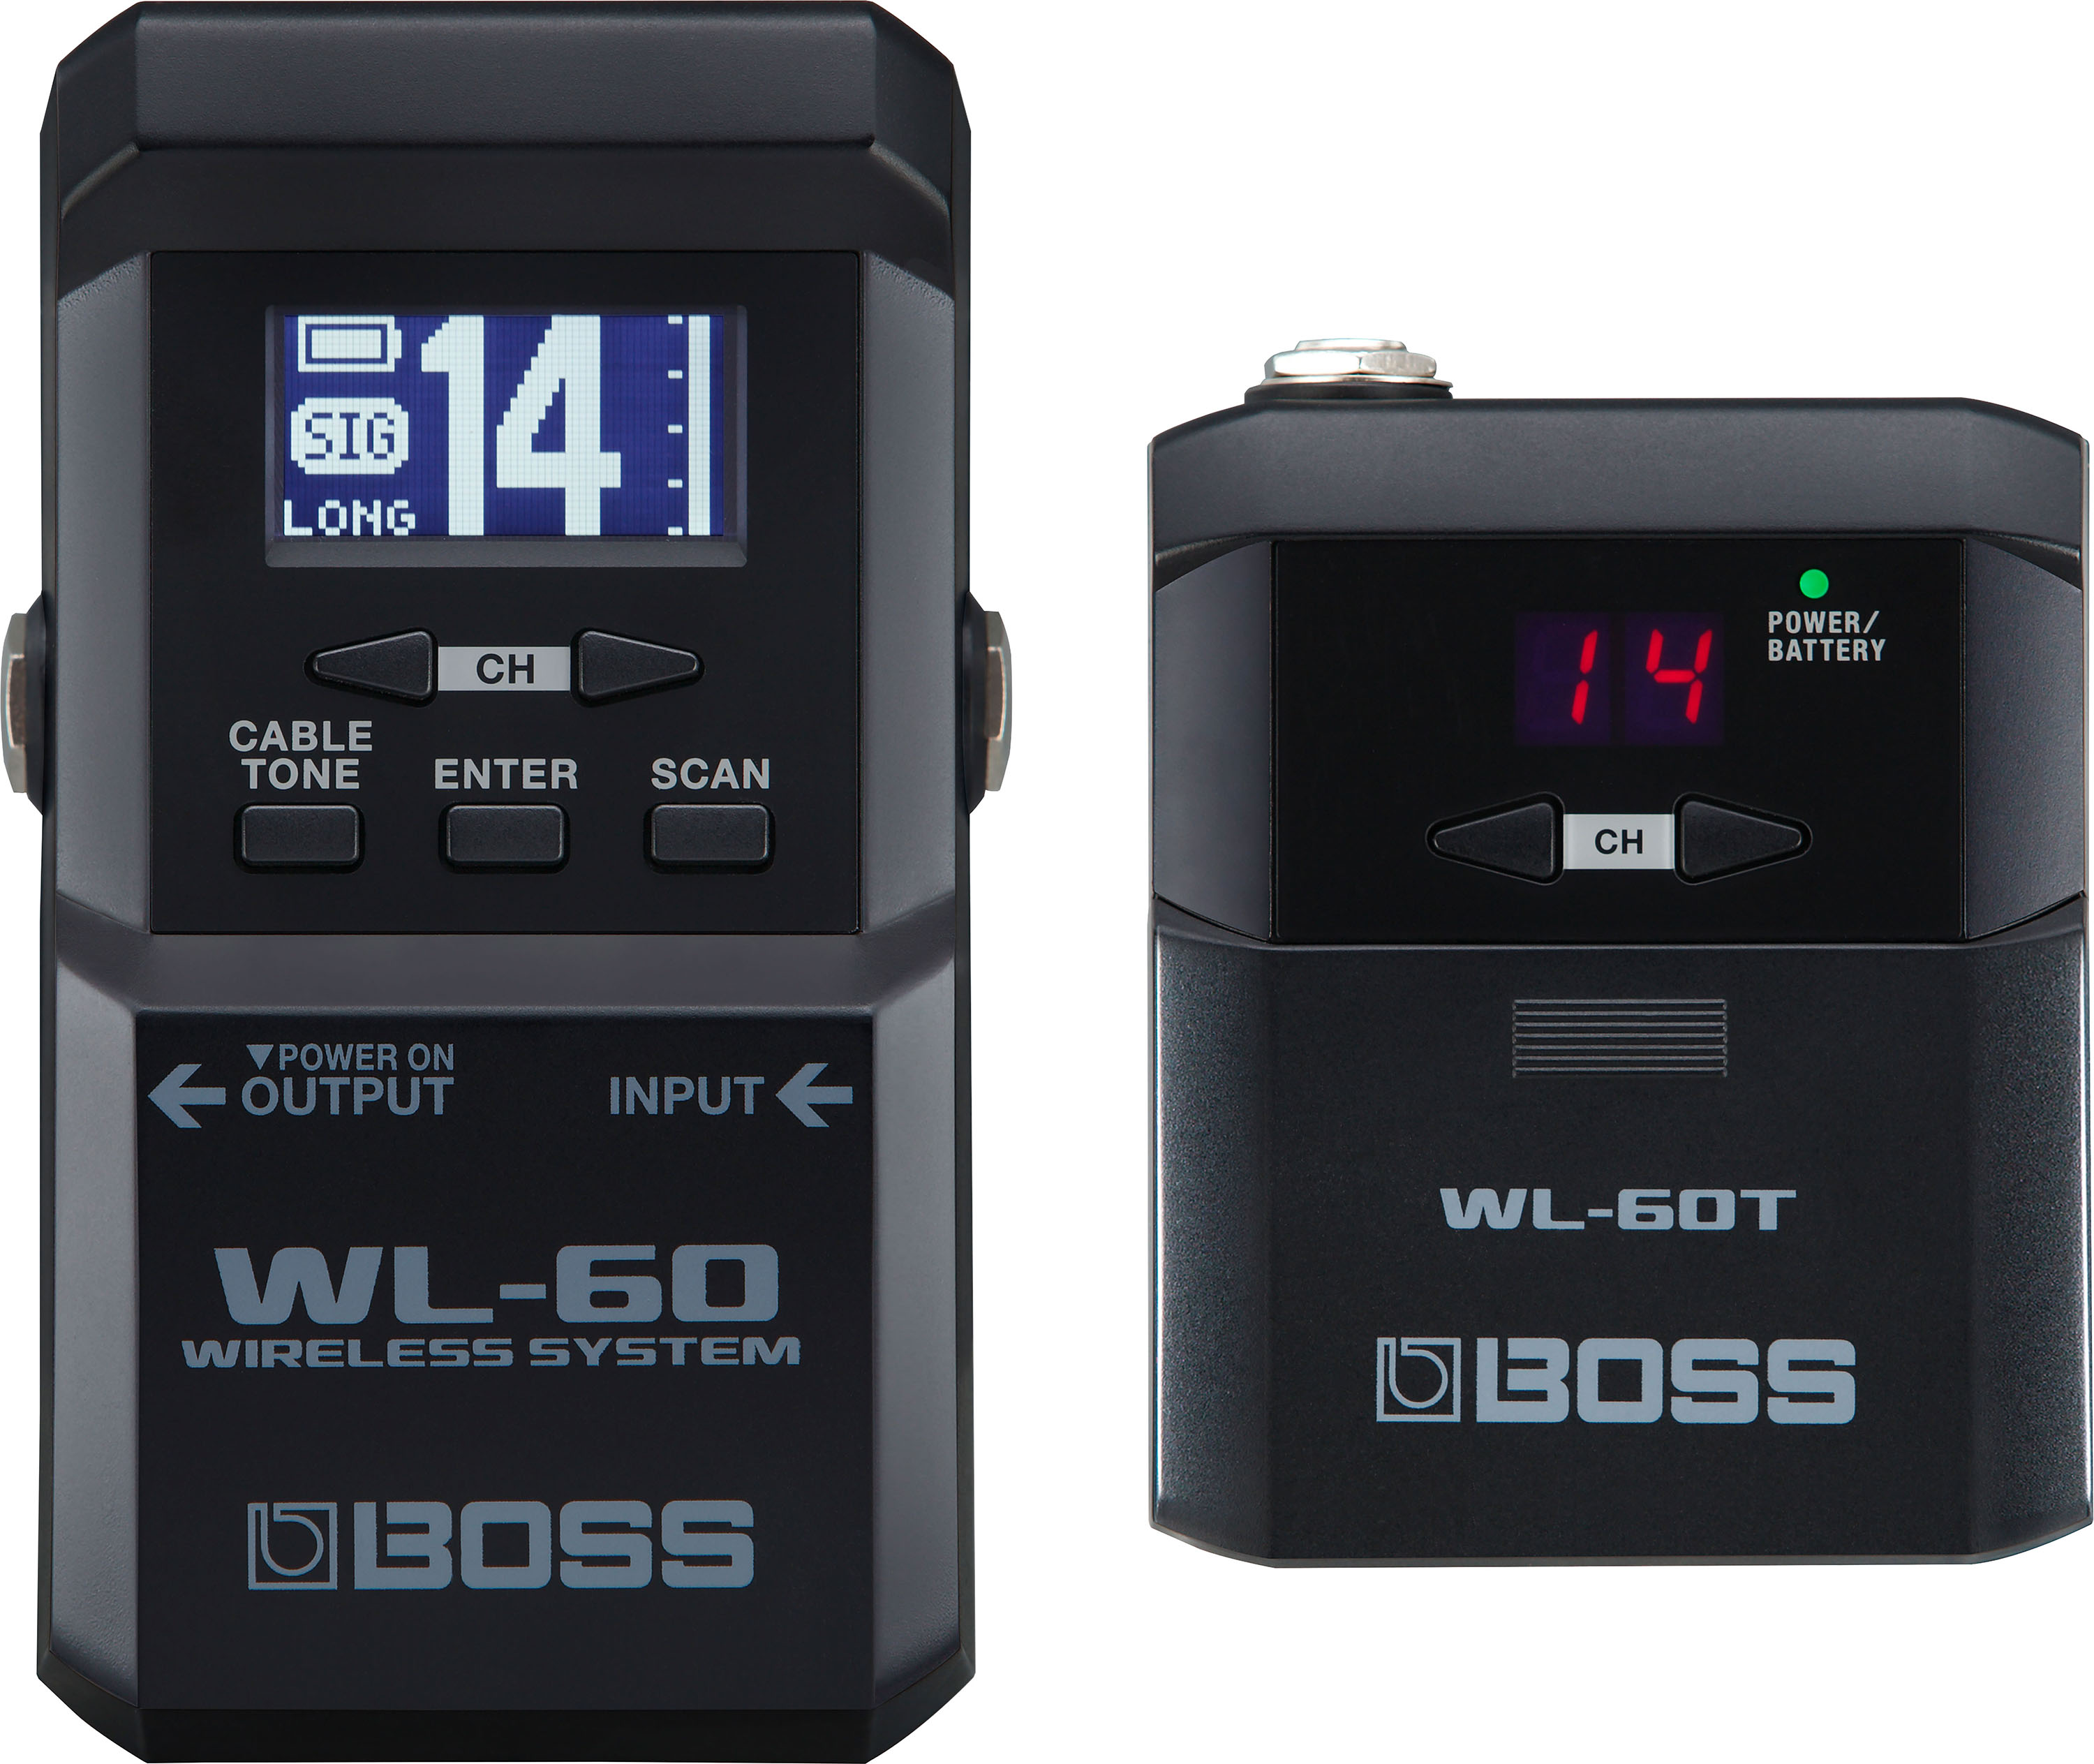 WL-60 Wireless System